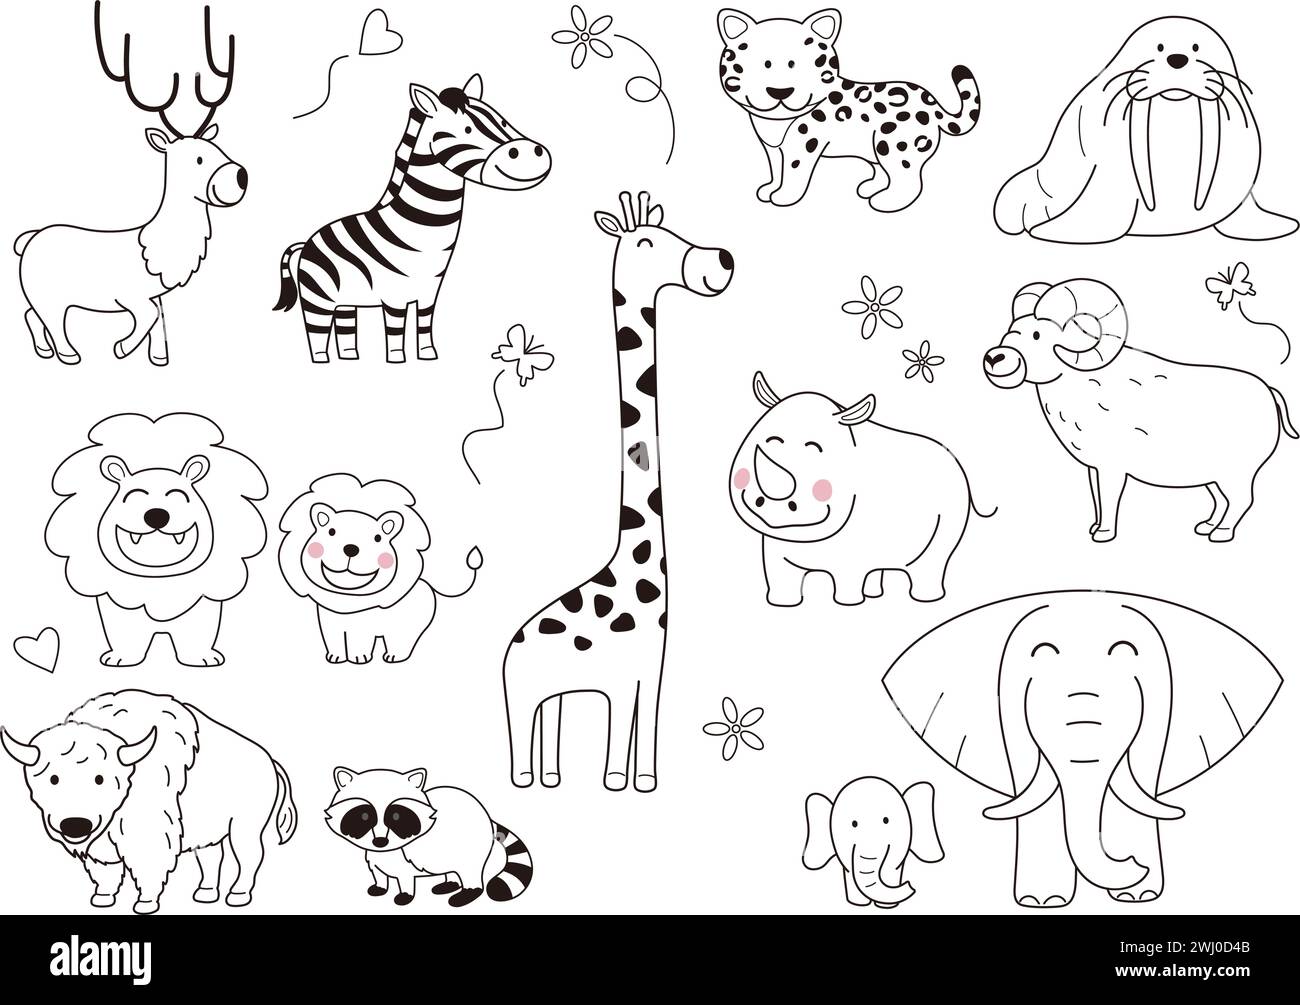 Handgezeichnete niedliche Cartoonish Tiere Vektor-Illustration Set isoliert auf Einem weißen Hintergrund. Stock Vektor